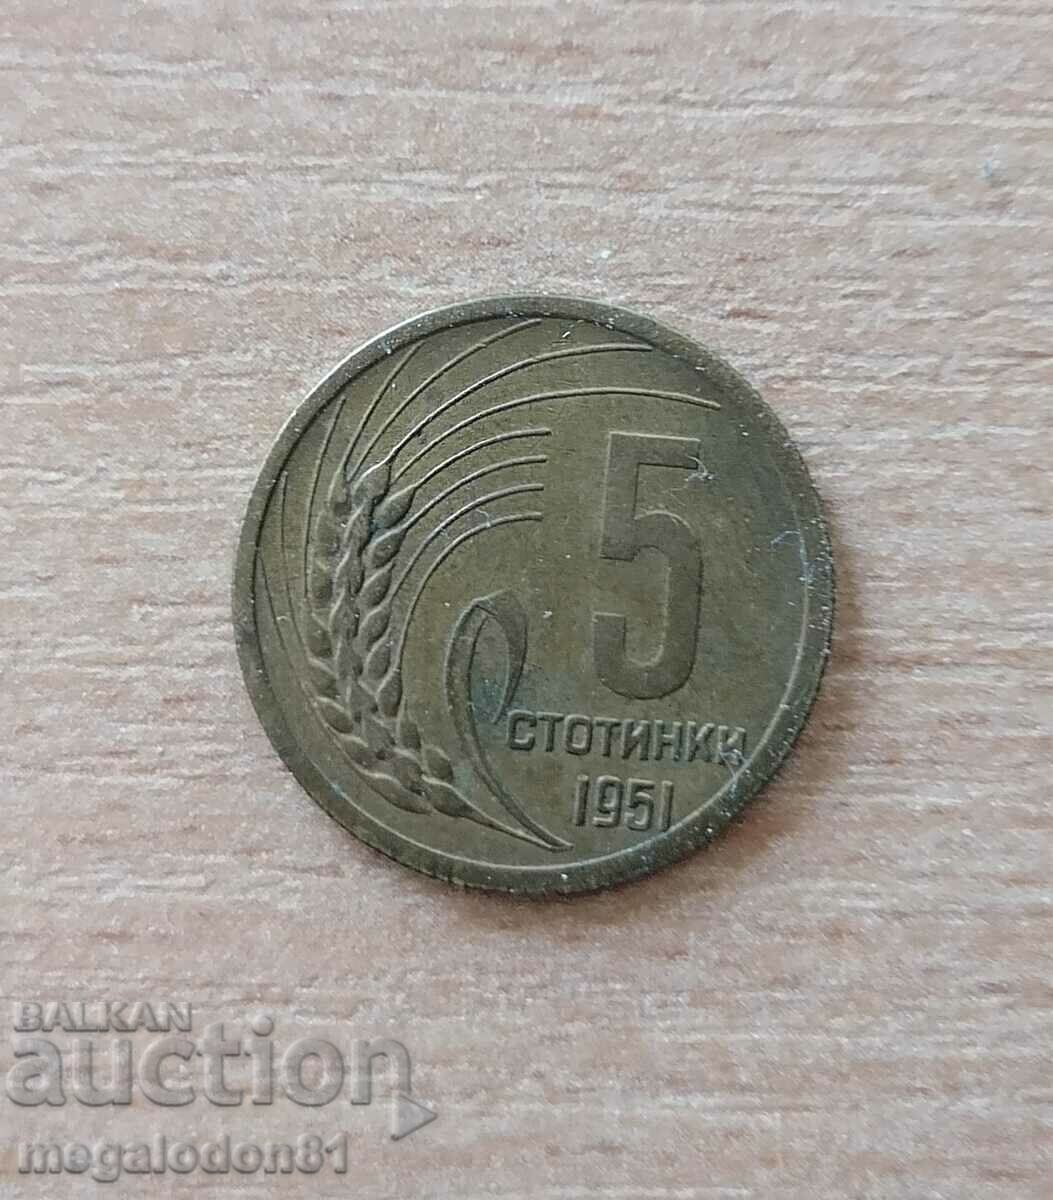 Bulgaria - 5 cenți 1951